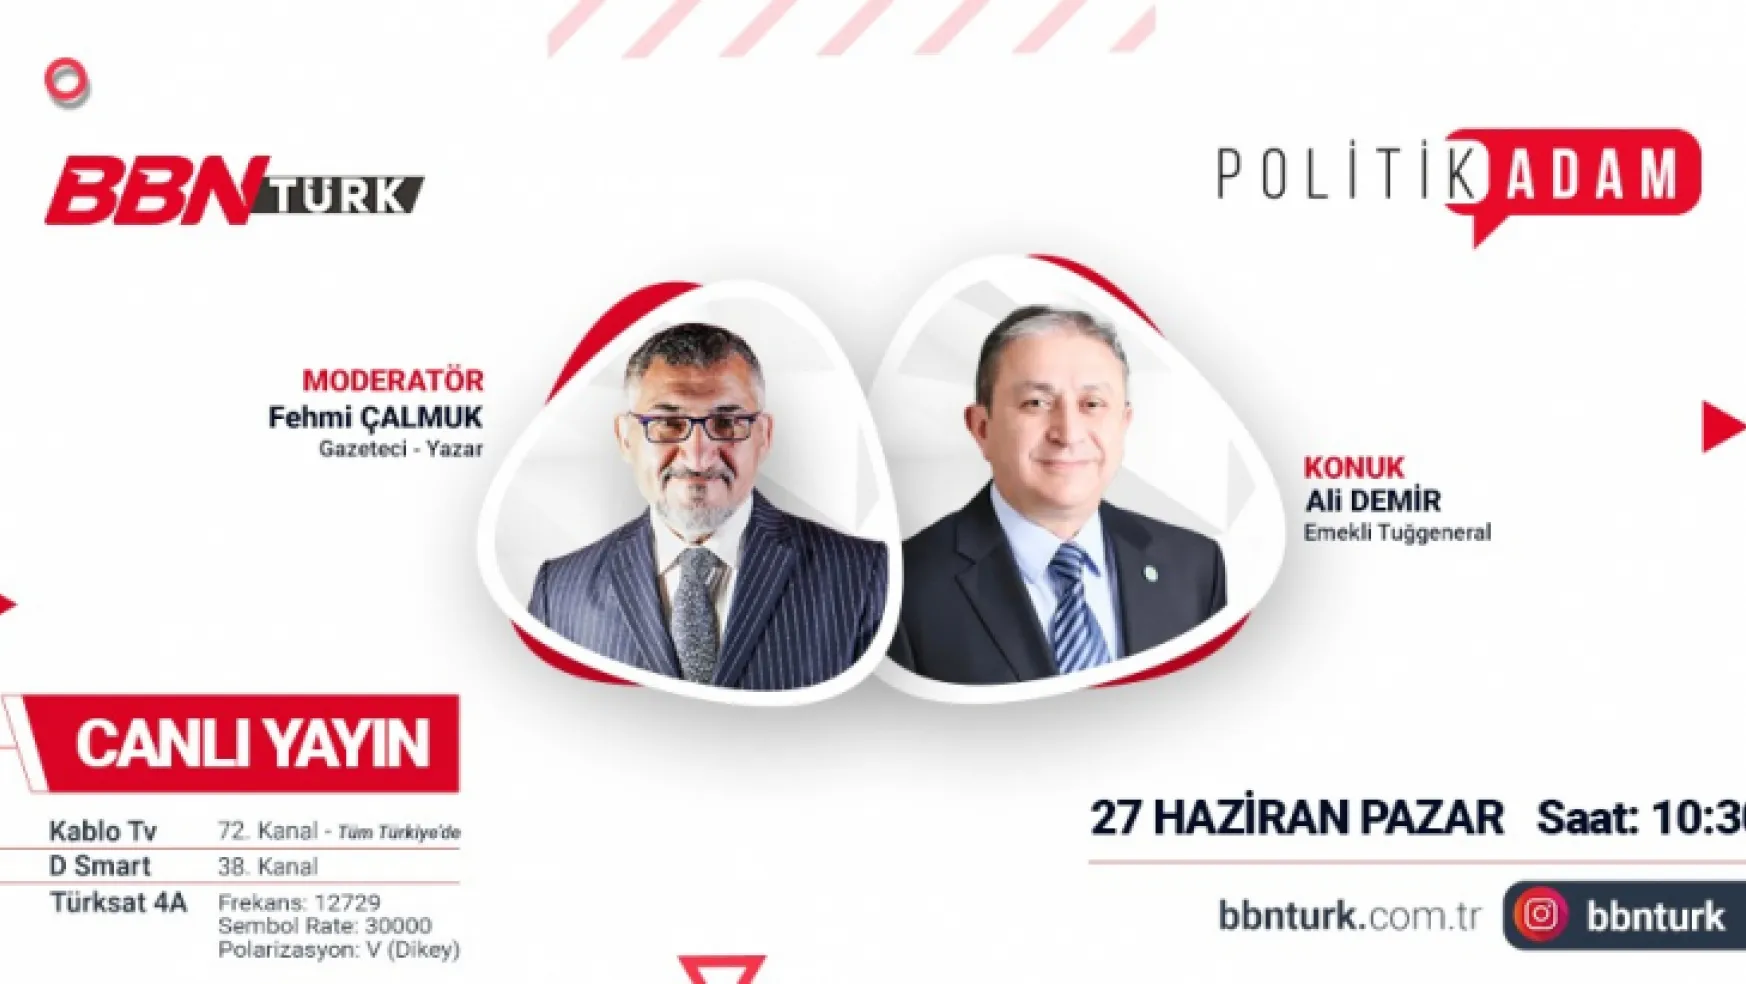 İki Devlet Tek Millet Türkiye Azerbaycan  Politik Adam'da